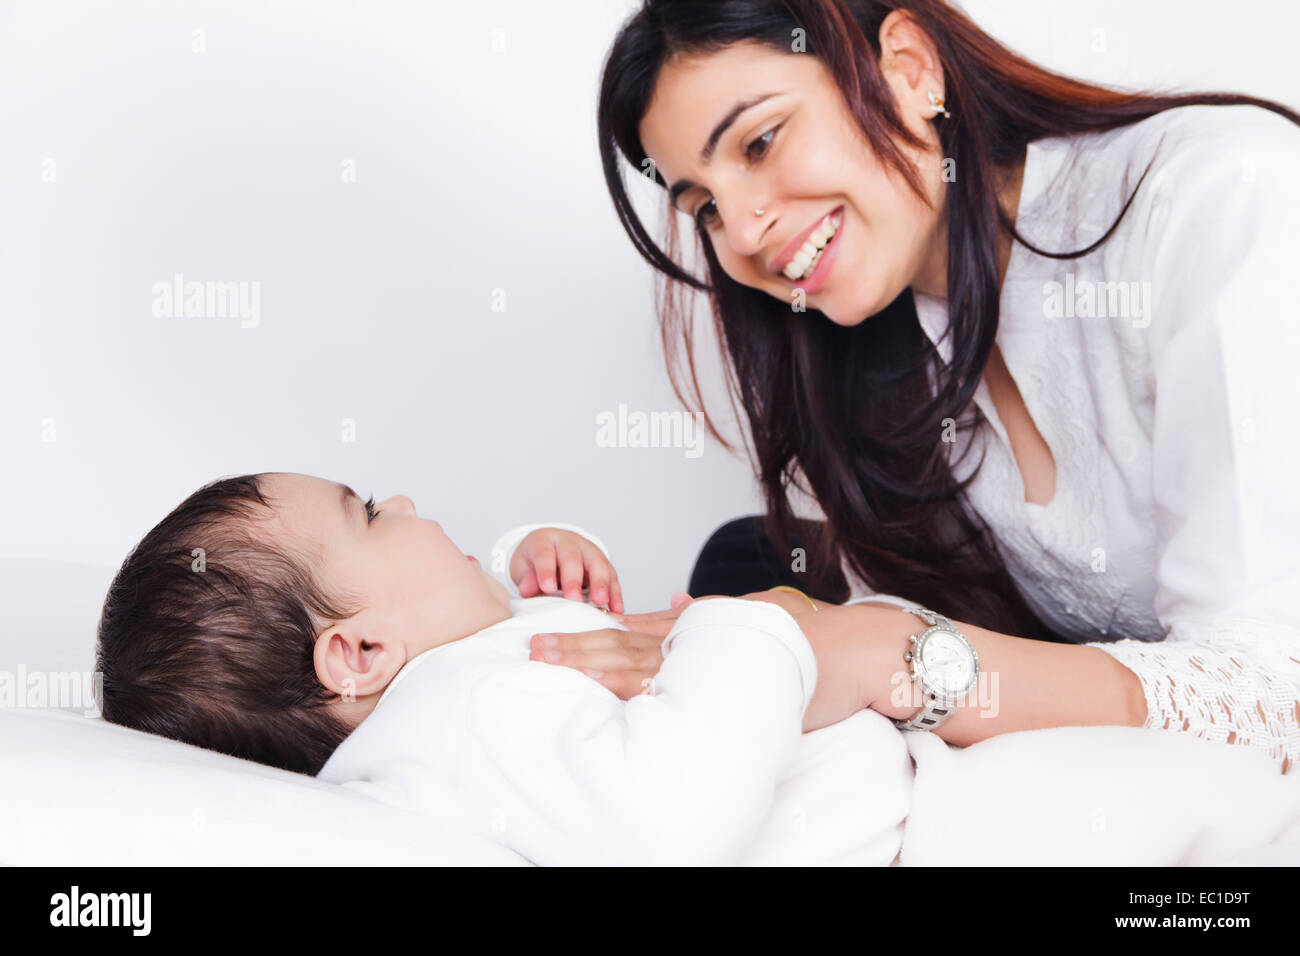 Mère indienne s'occuper de son bébé Banque D'Images